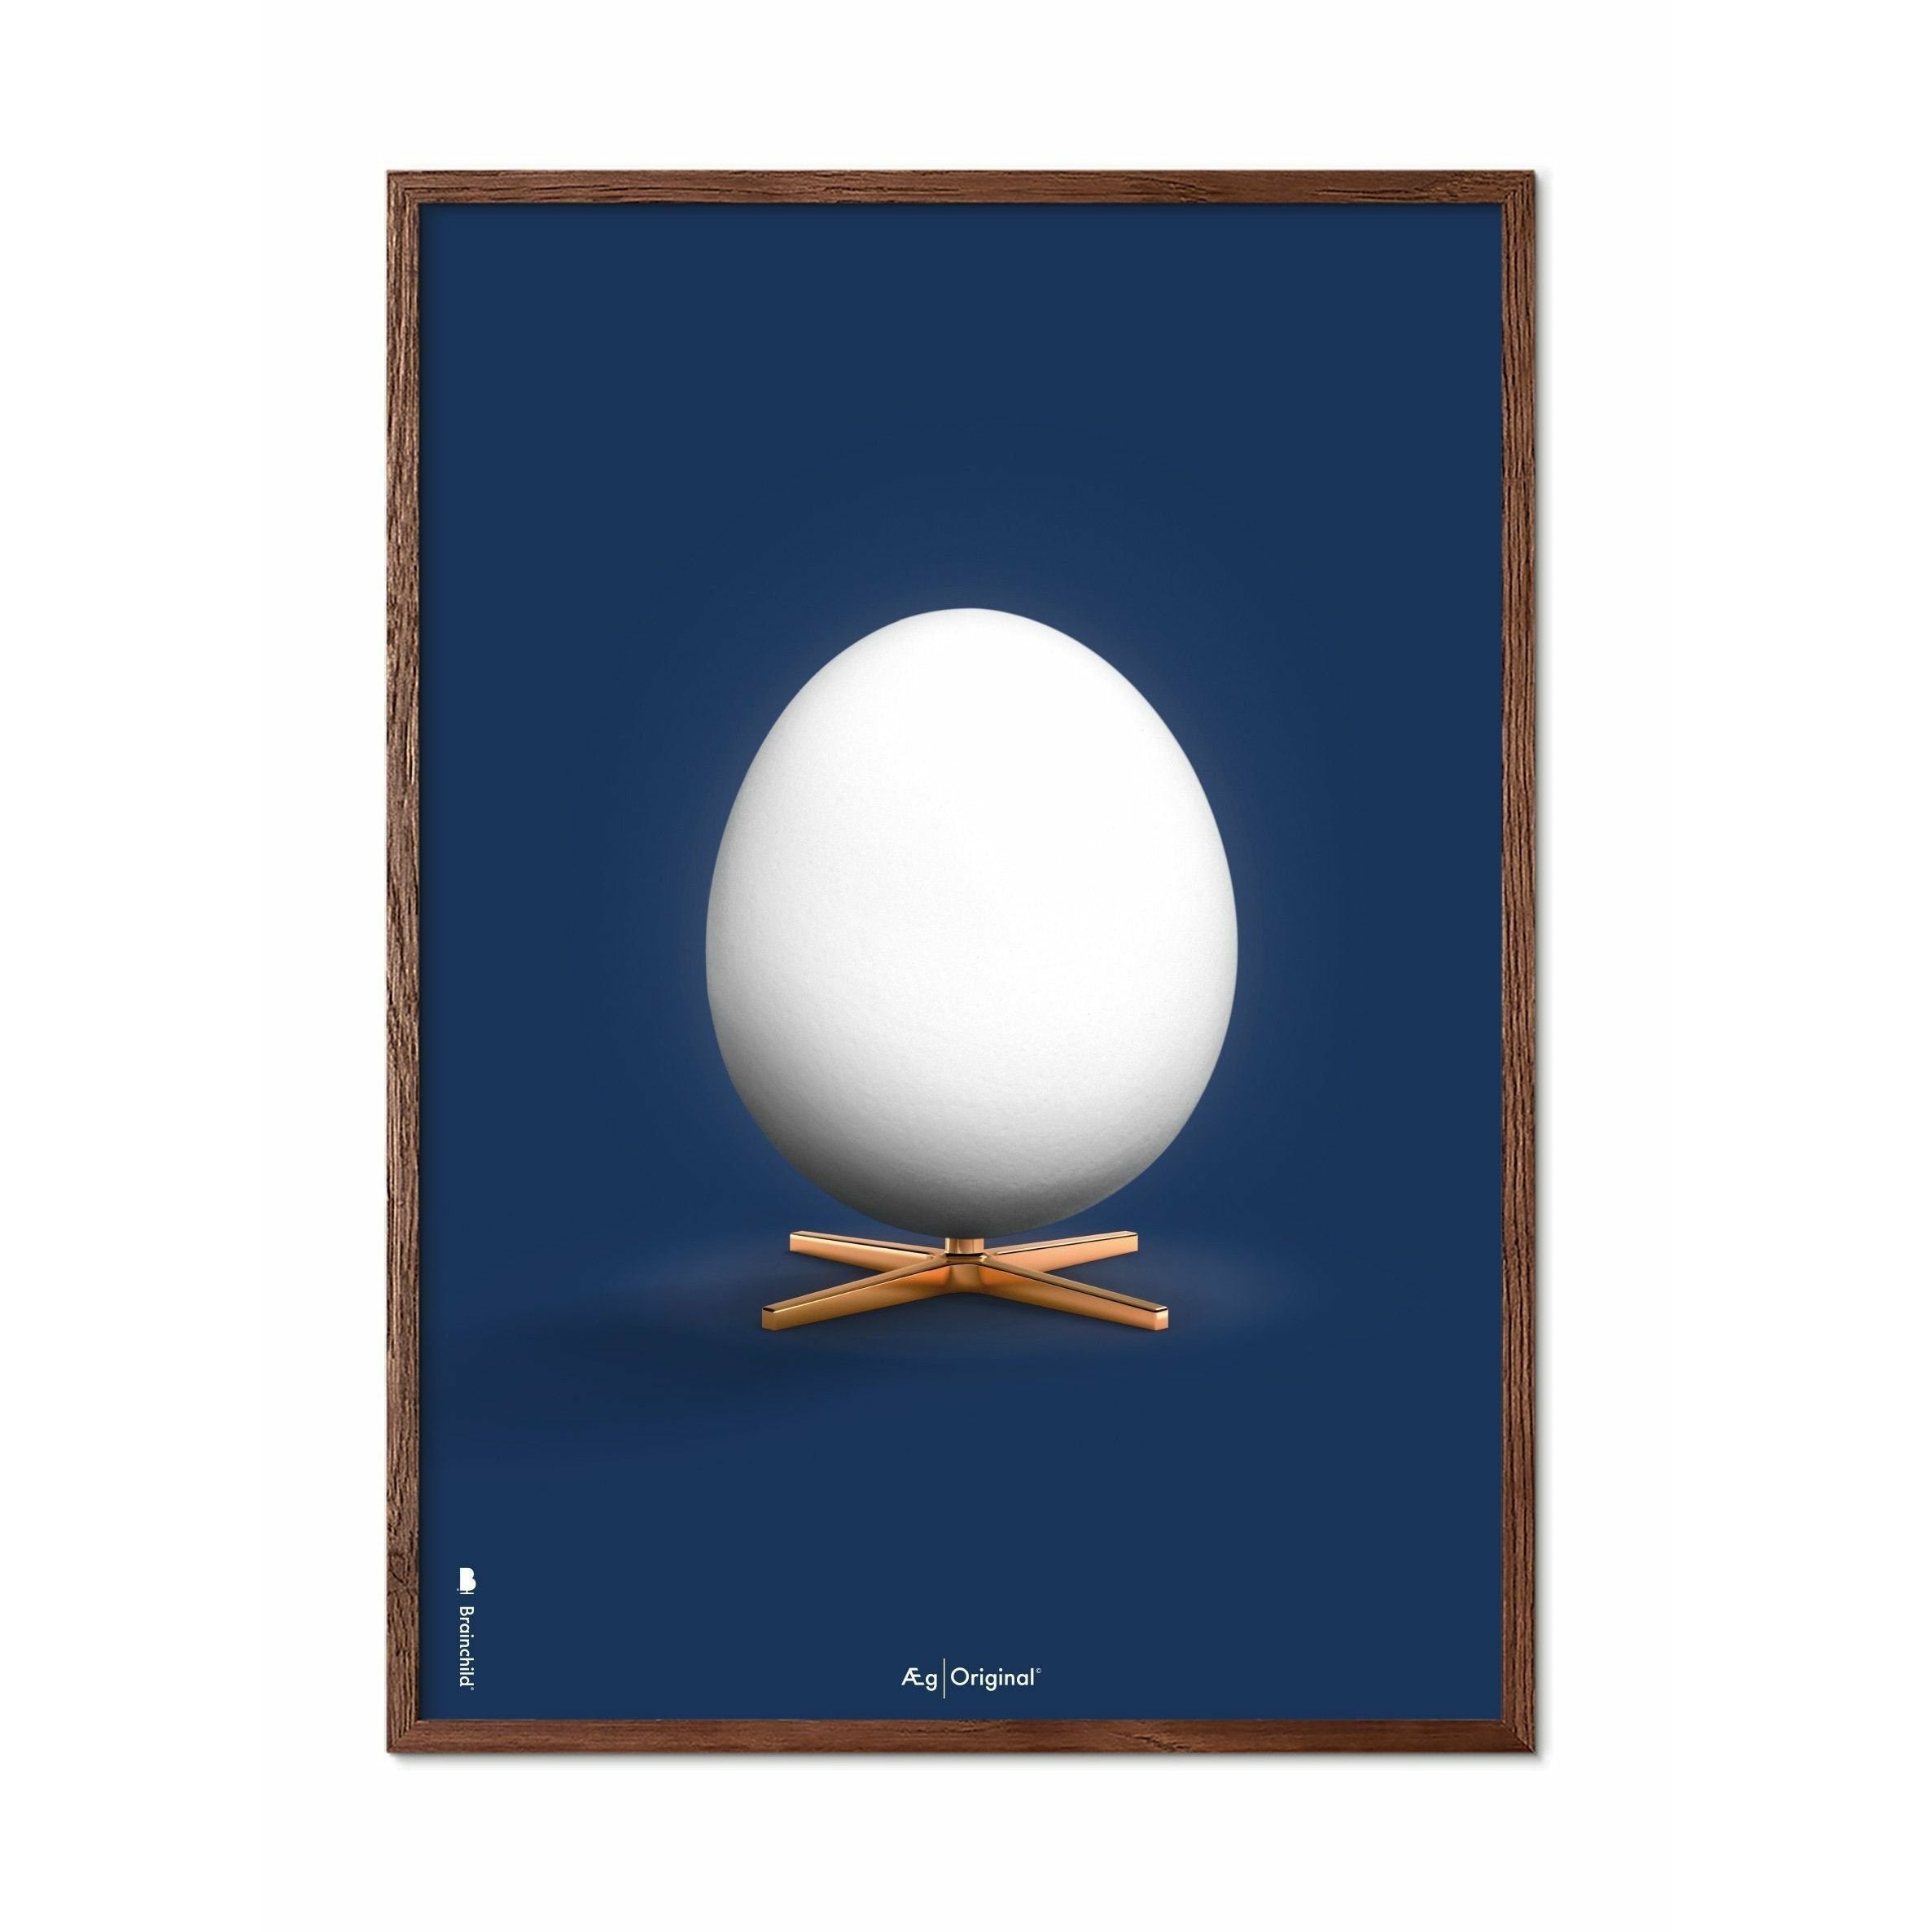 Póster clásico de huevo de creación, marco de madera oscura A5, fondo azul oscuro